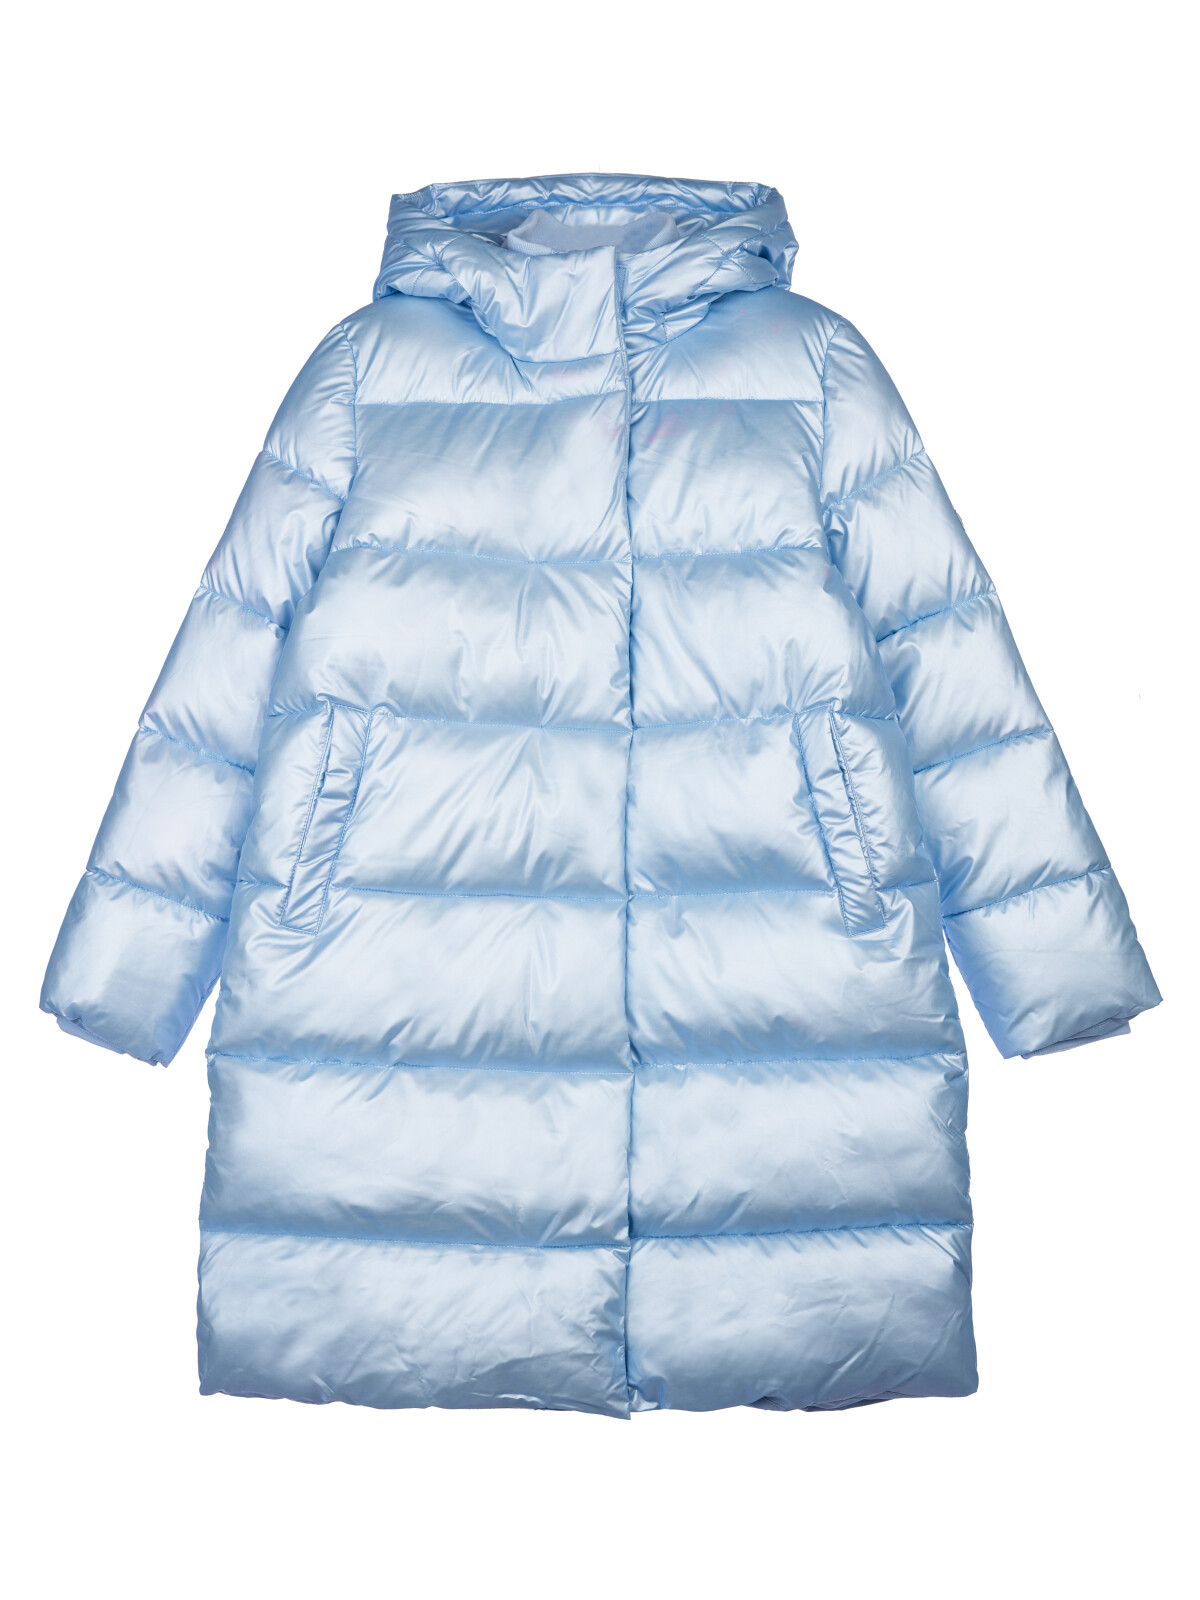 Пальто текстильное с полиуретановым покрытием для девочек PlayToday, голубой, 140